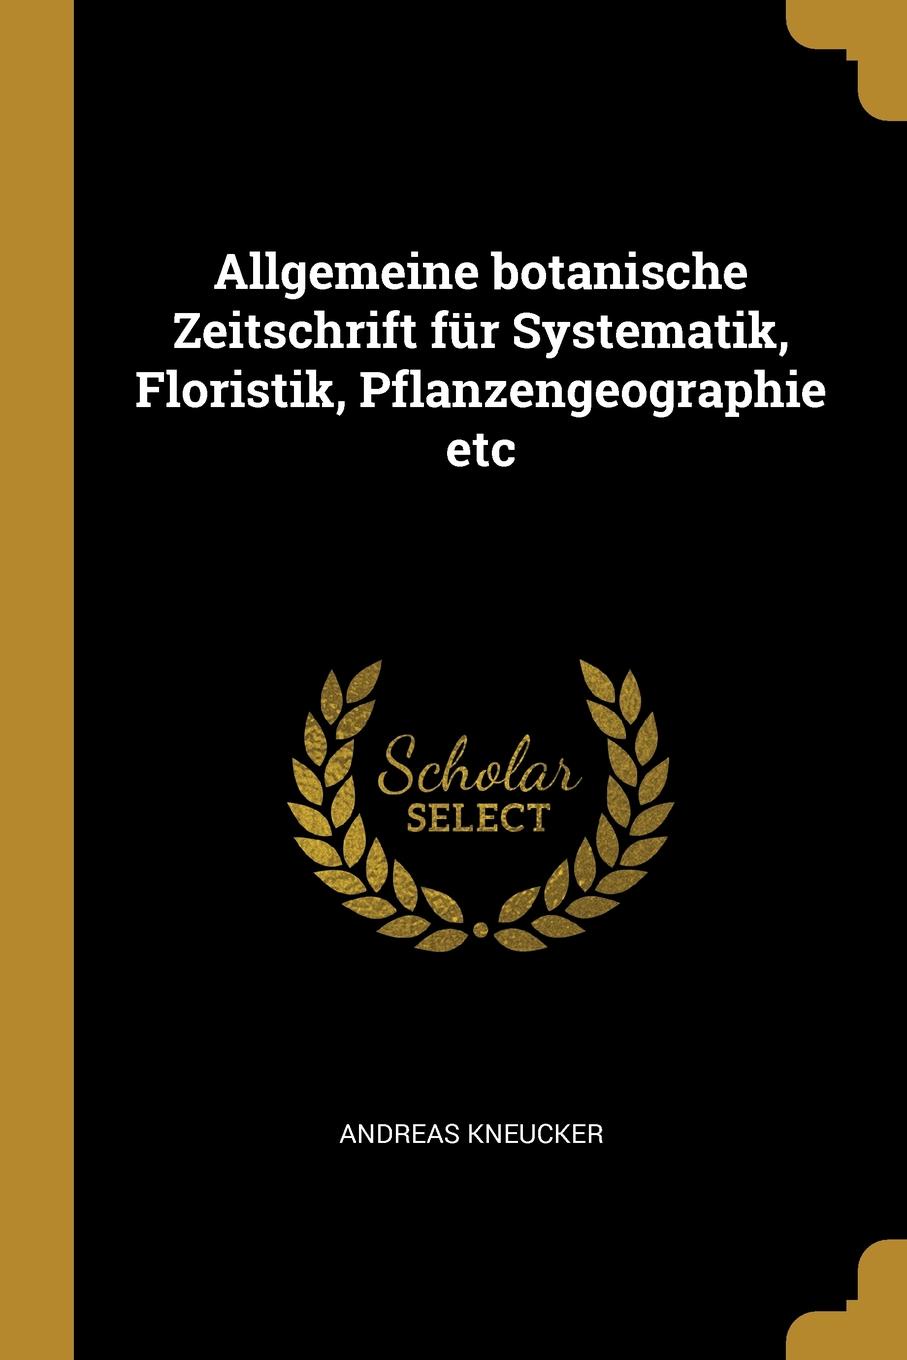 Allgemeine botanische Zeitschrift fur Systematik, Floristik, Pflanzengeographie etc